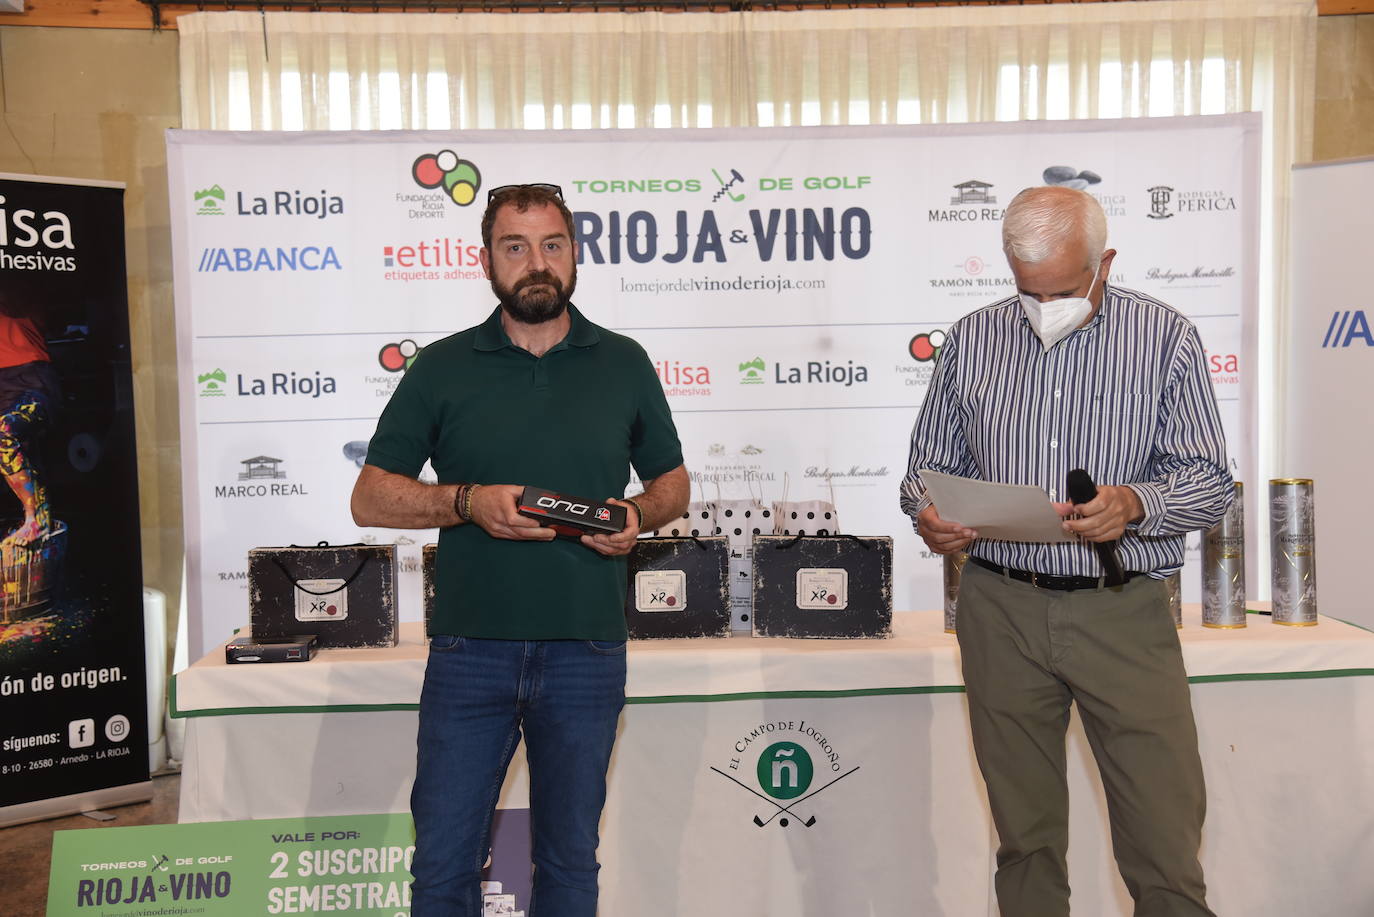 Fotos: Entrega de premios del torneo de Golf y Vino Marqués de Riscal